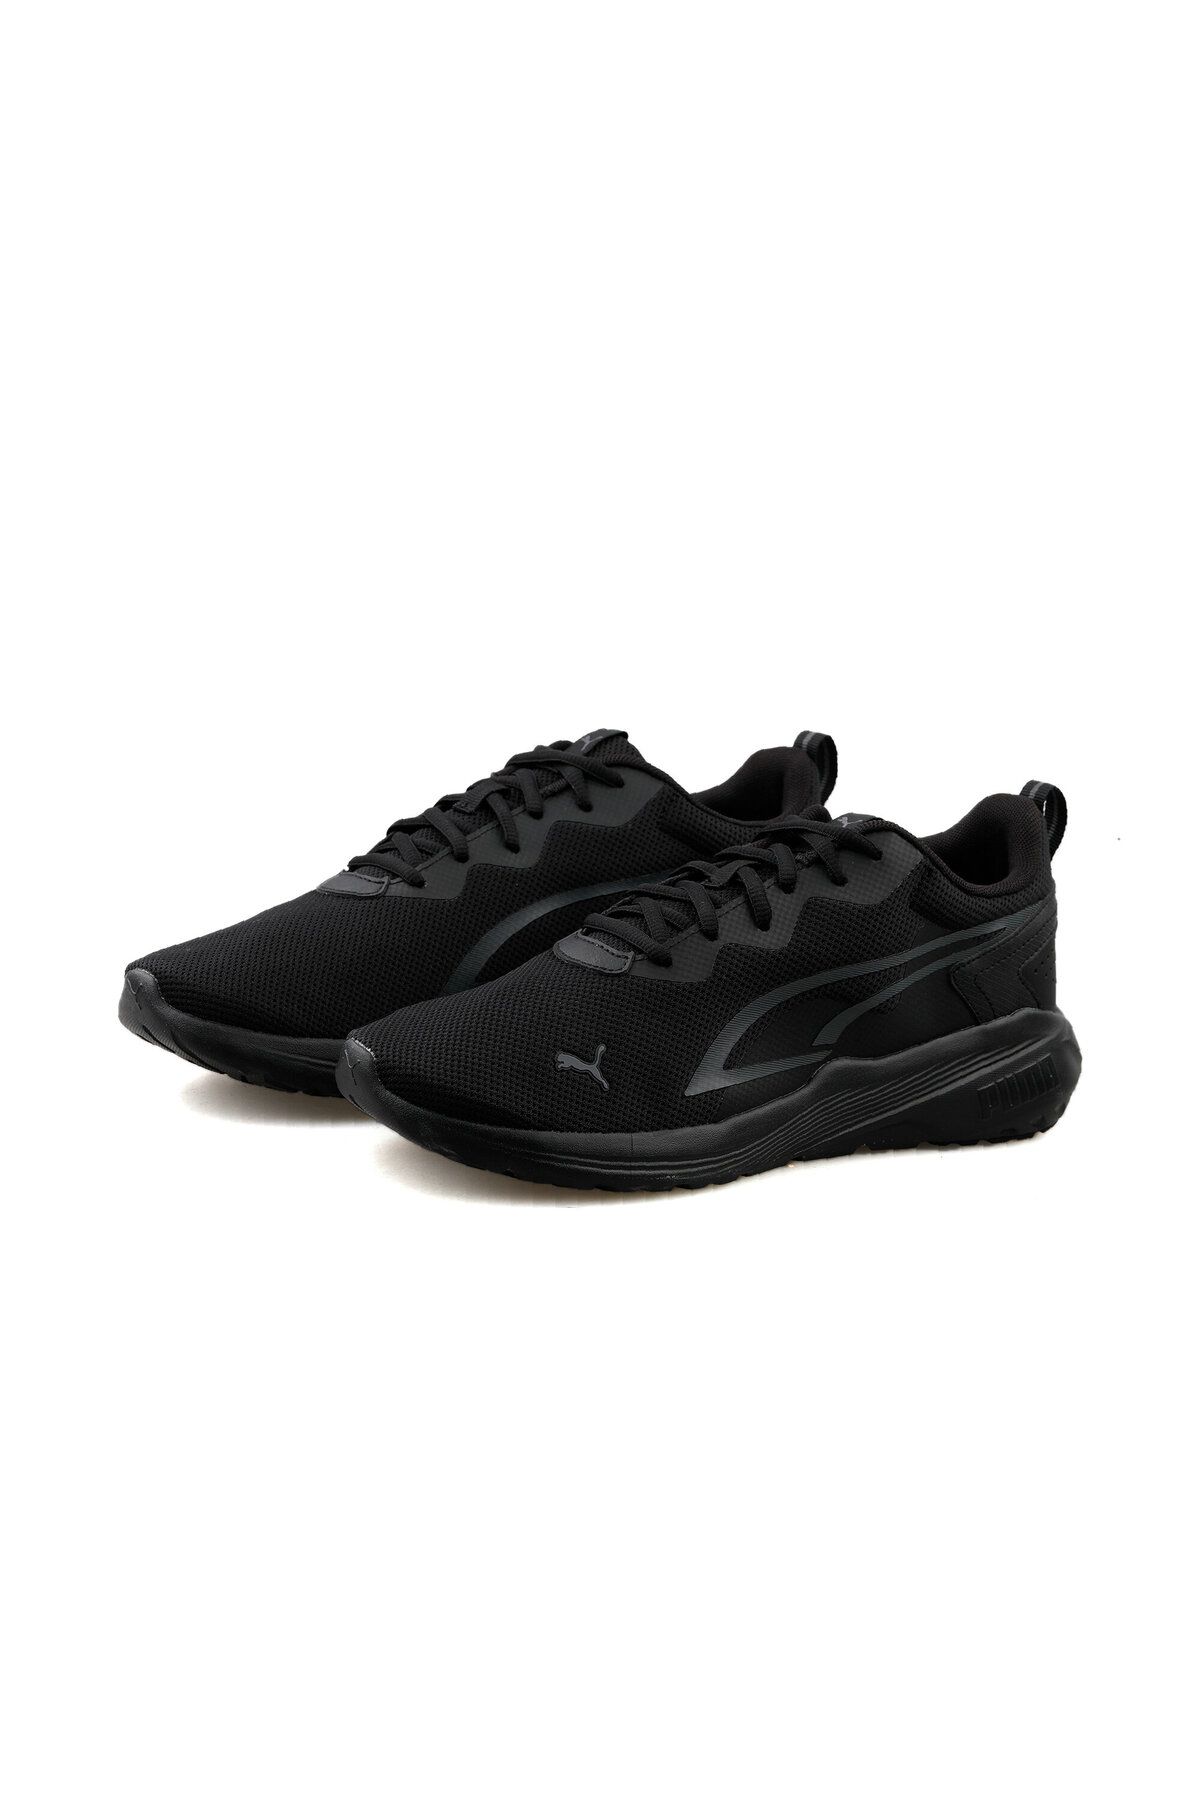 Puma Erkek Günlük Kullanıma Uygun Yürüyüş Koşu Spor Ayakkabı Sneaker